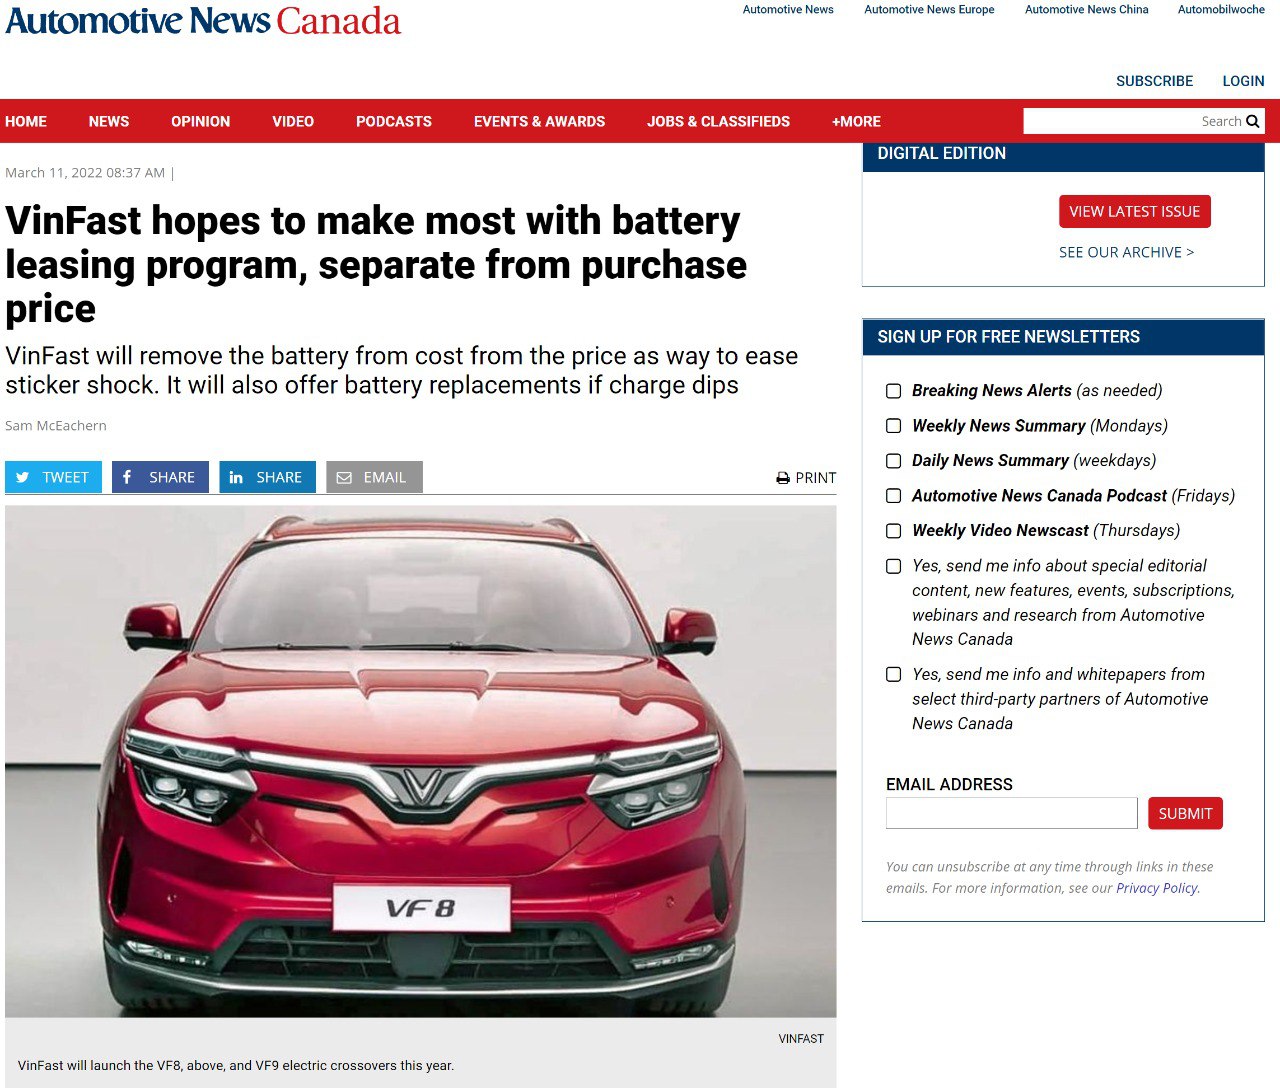 Bài báo được đăng tải bởi Automotive News Canada